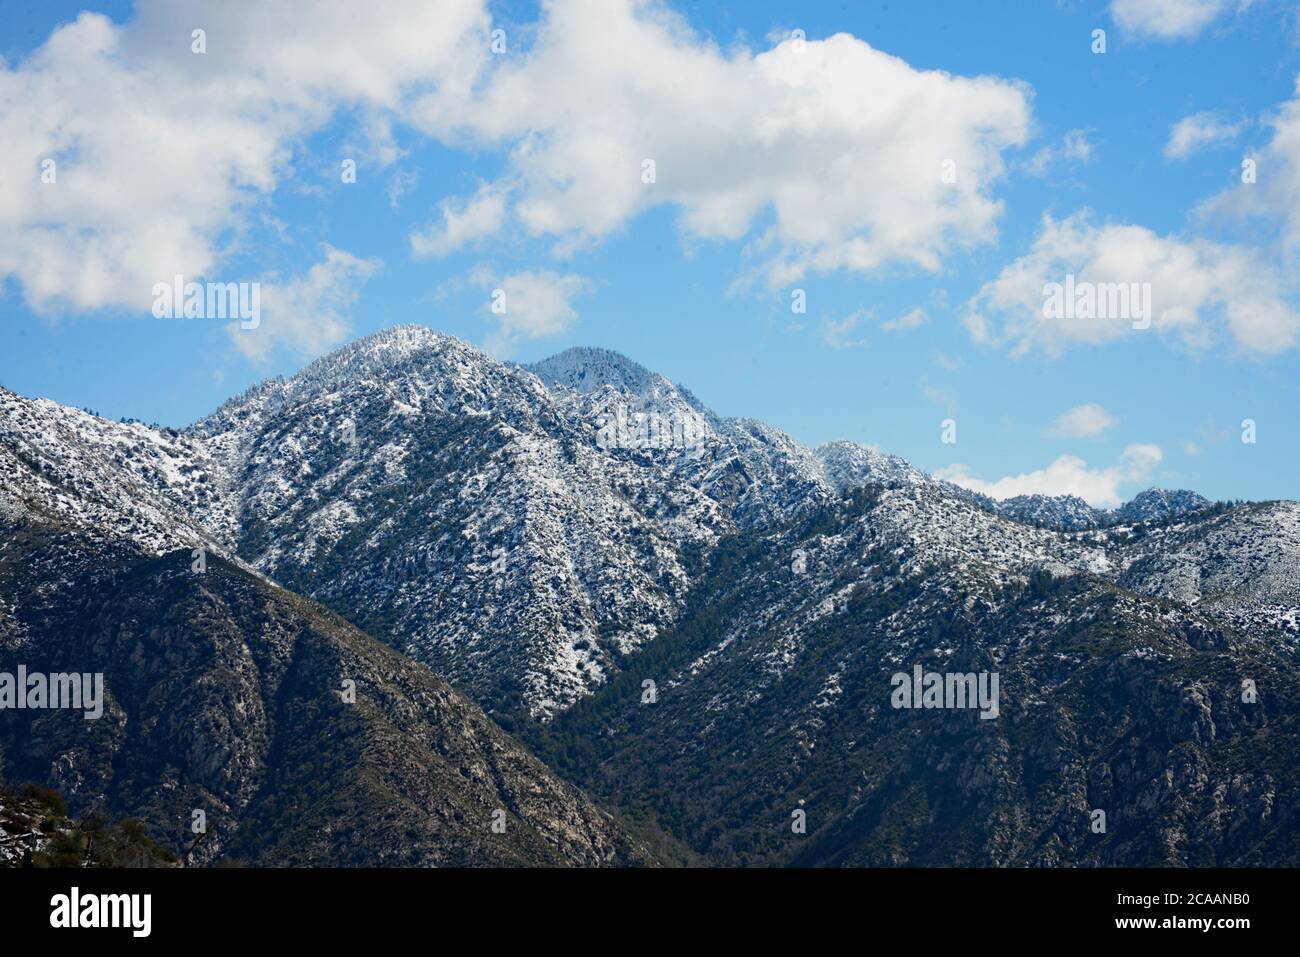 Impressionante paesaggio di montagne innevate in lontananza con nuvole bianche soffici che galleggiano sopra in bei cieli blu coraggiosamente confident.beauty, Foto Stock